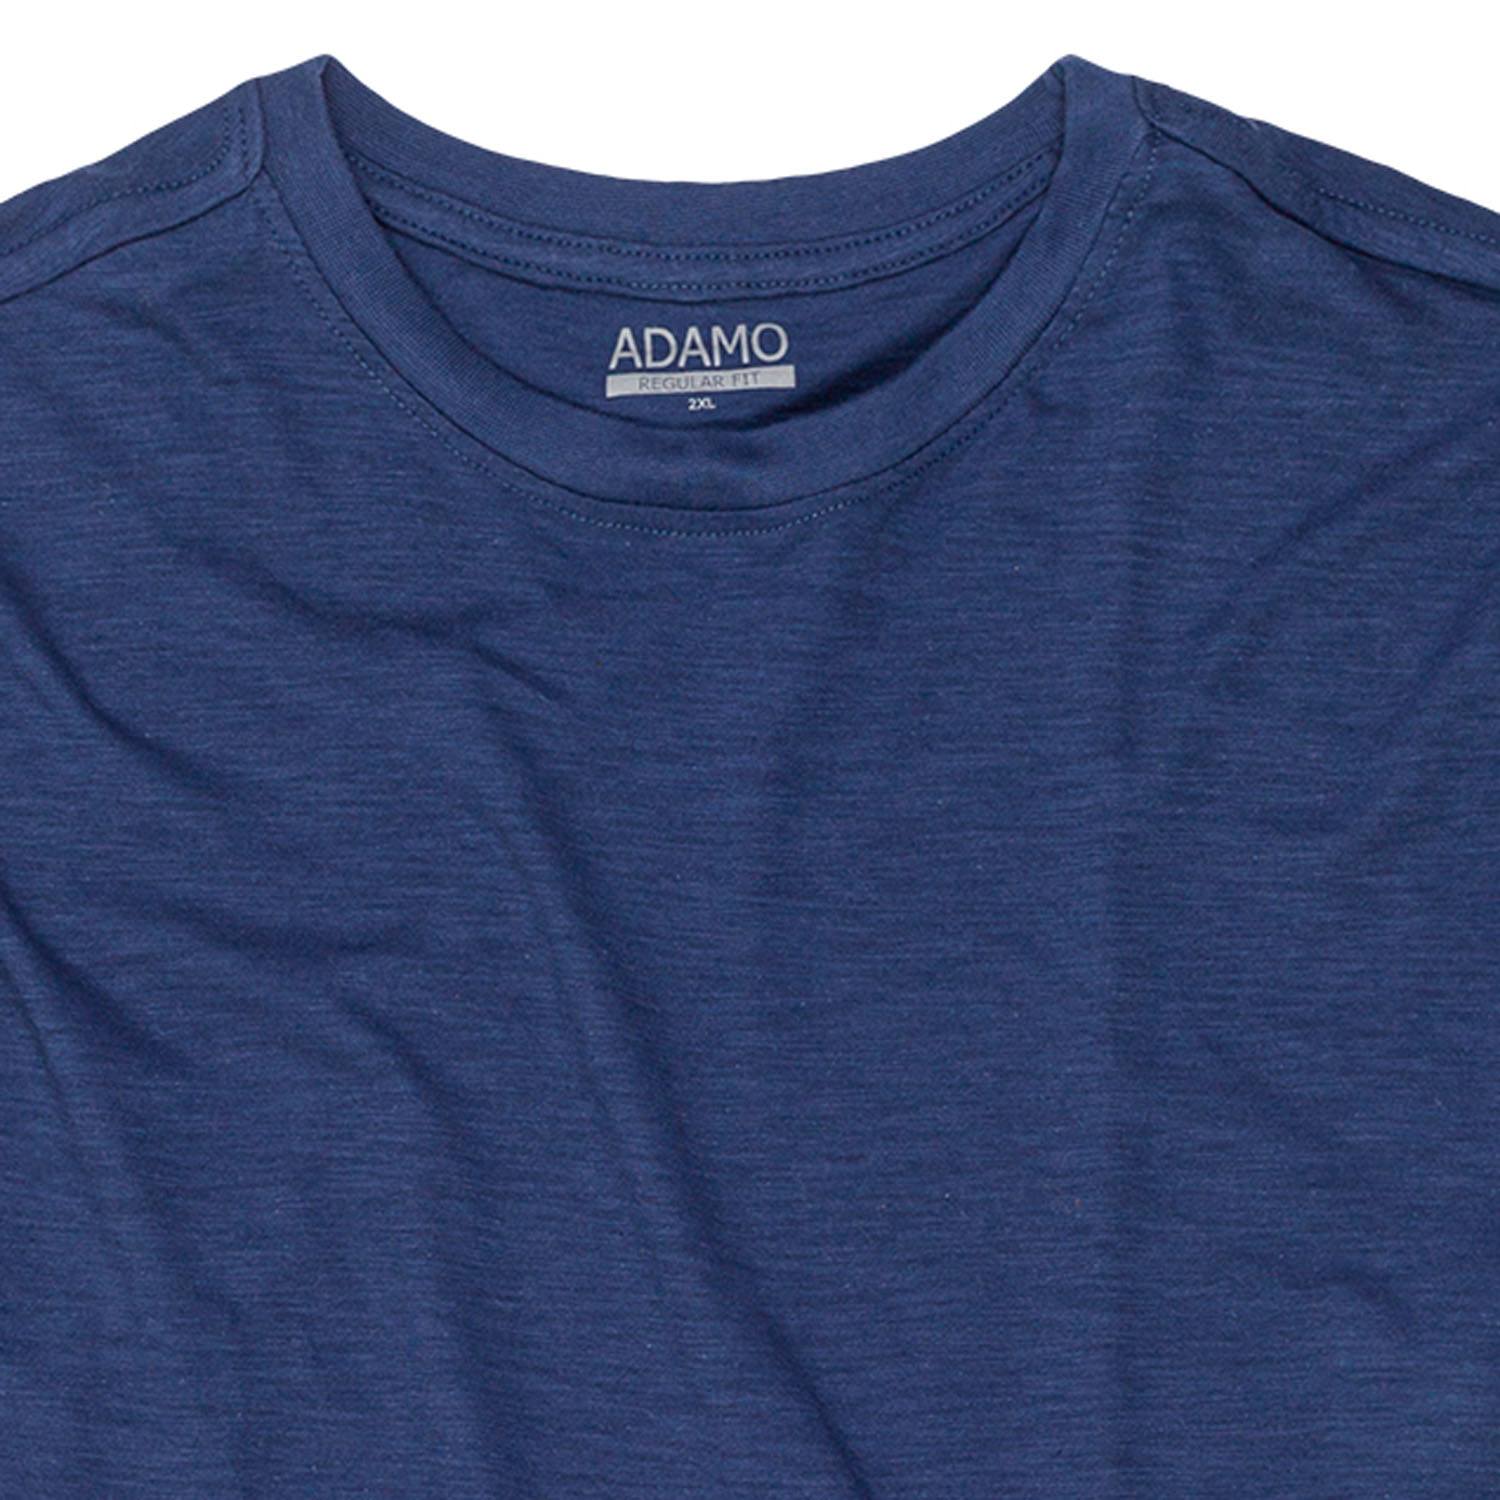 T-shirt série KEVIN by ADAMO jusqu'à la grande taille 12XL - couleur: bleu jeans